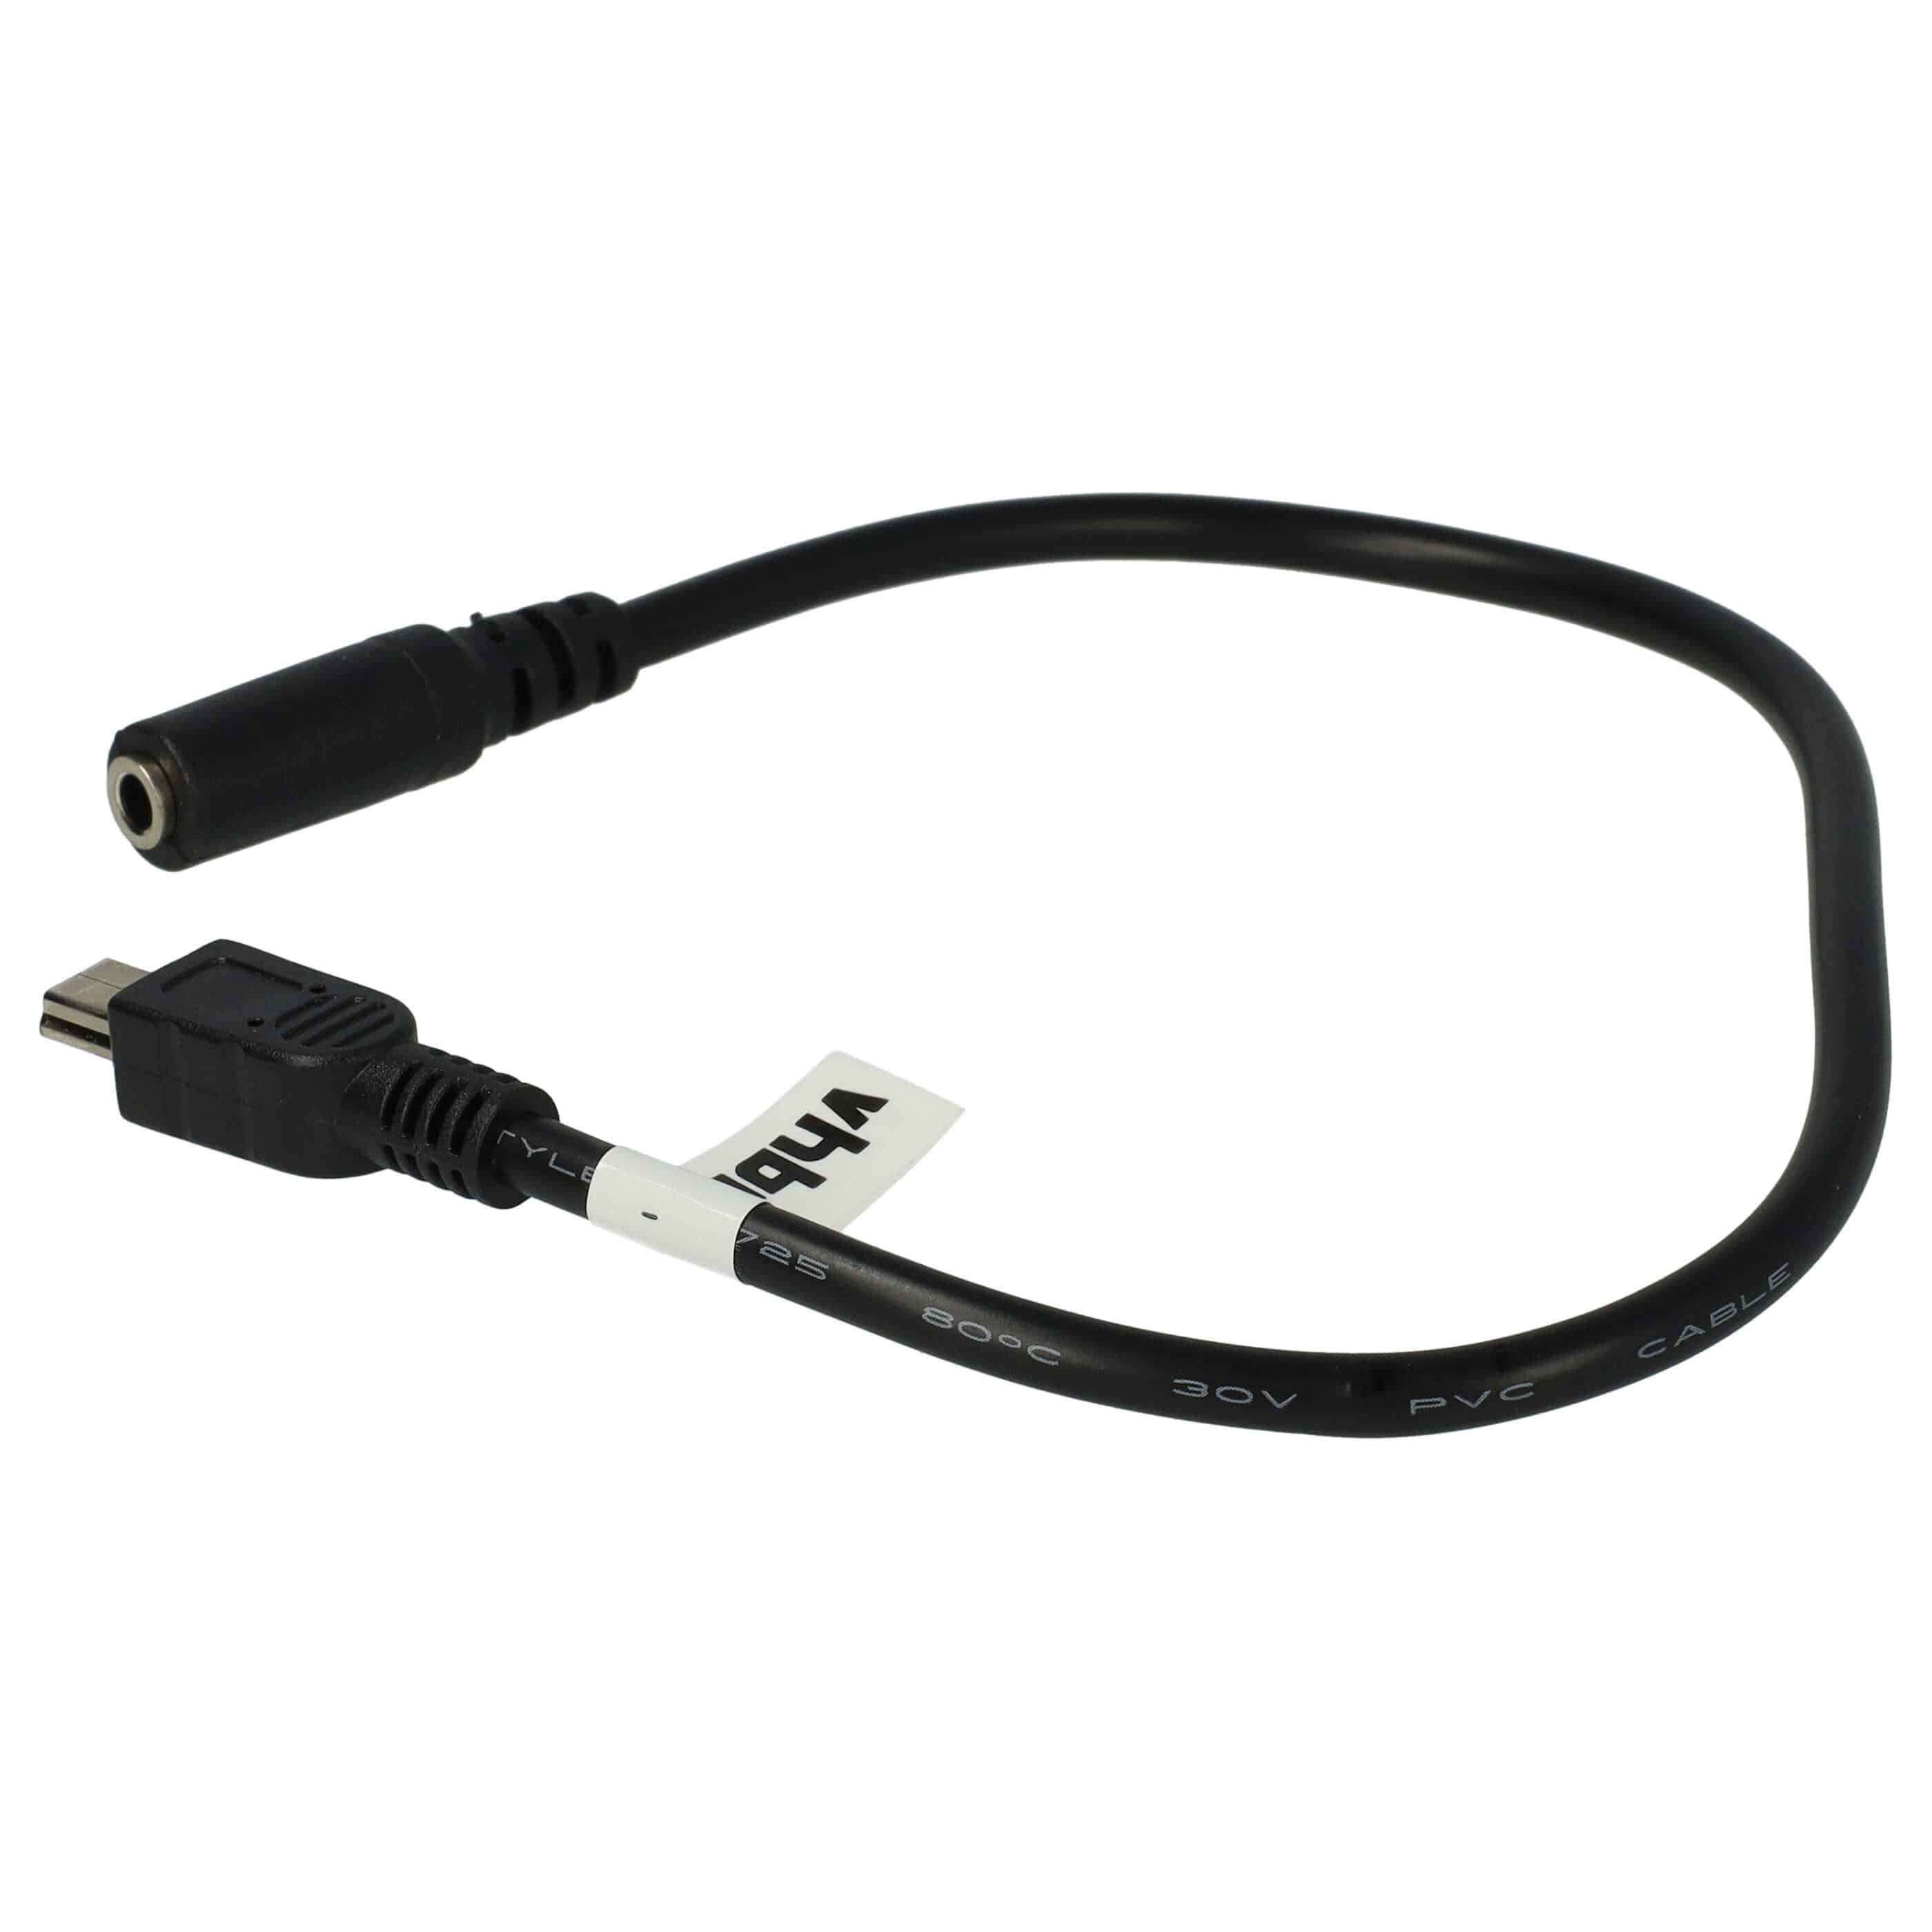 Cable mini USB a jack para cámaras de acción GoPro Hero, etc. - Cable adaptador